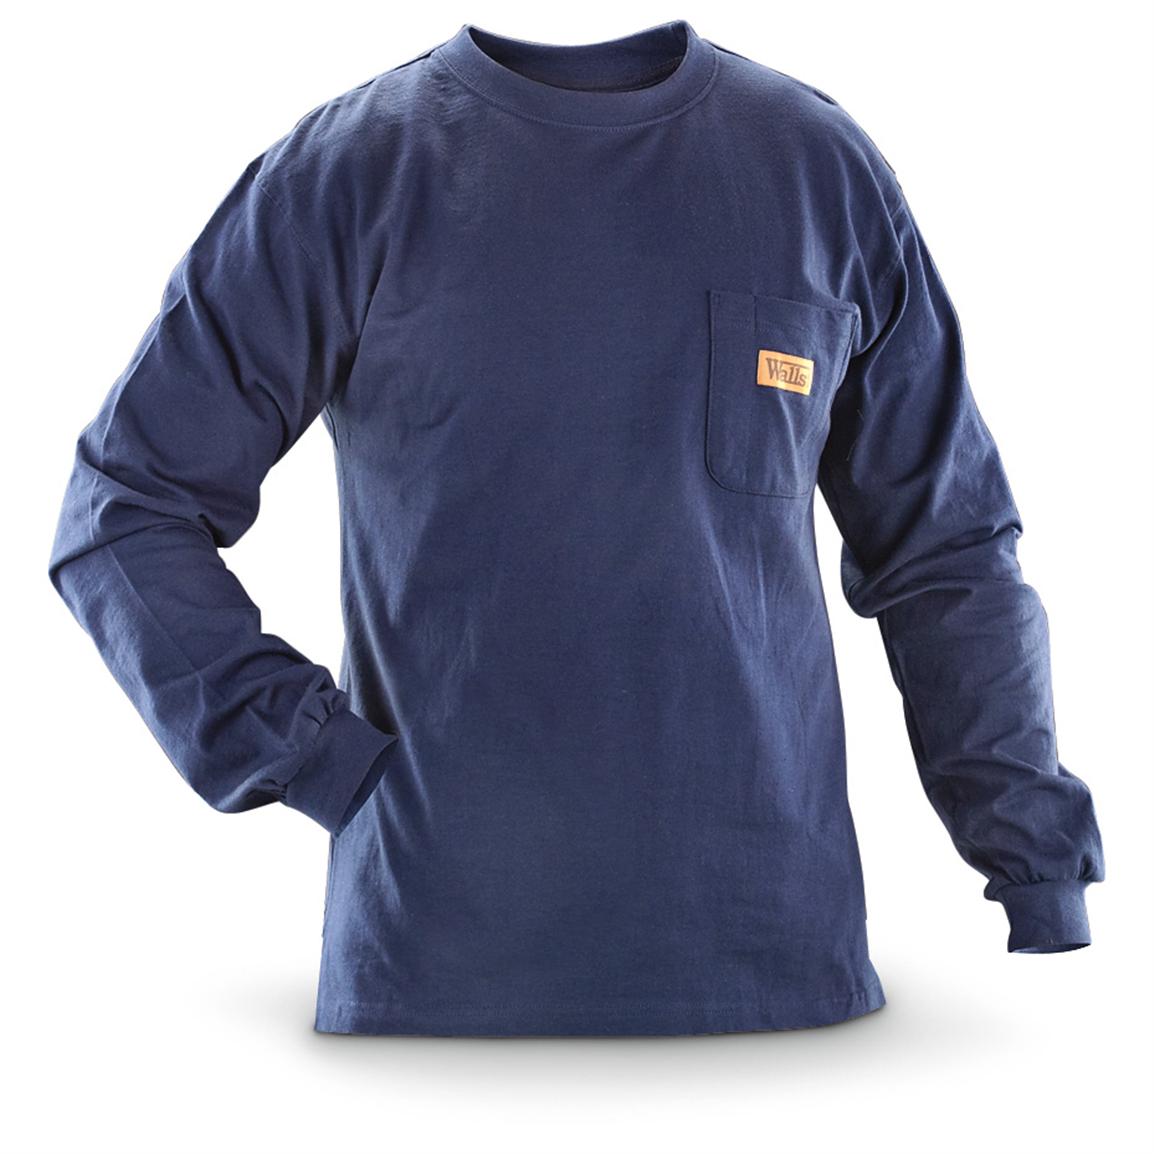 Walls Long-sleeved Pocket Work T-shirt - 582312, T-Shirts at Sportsman ...